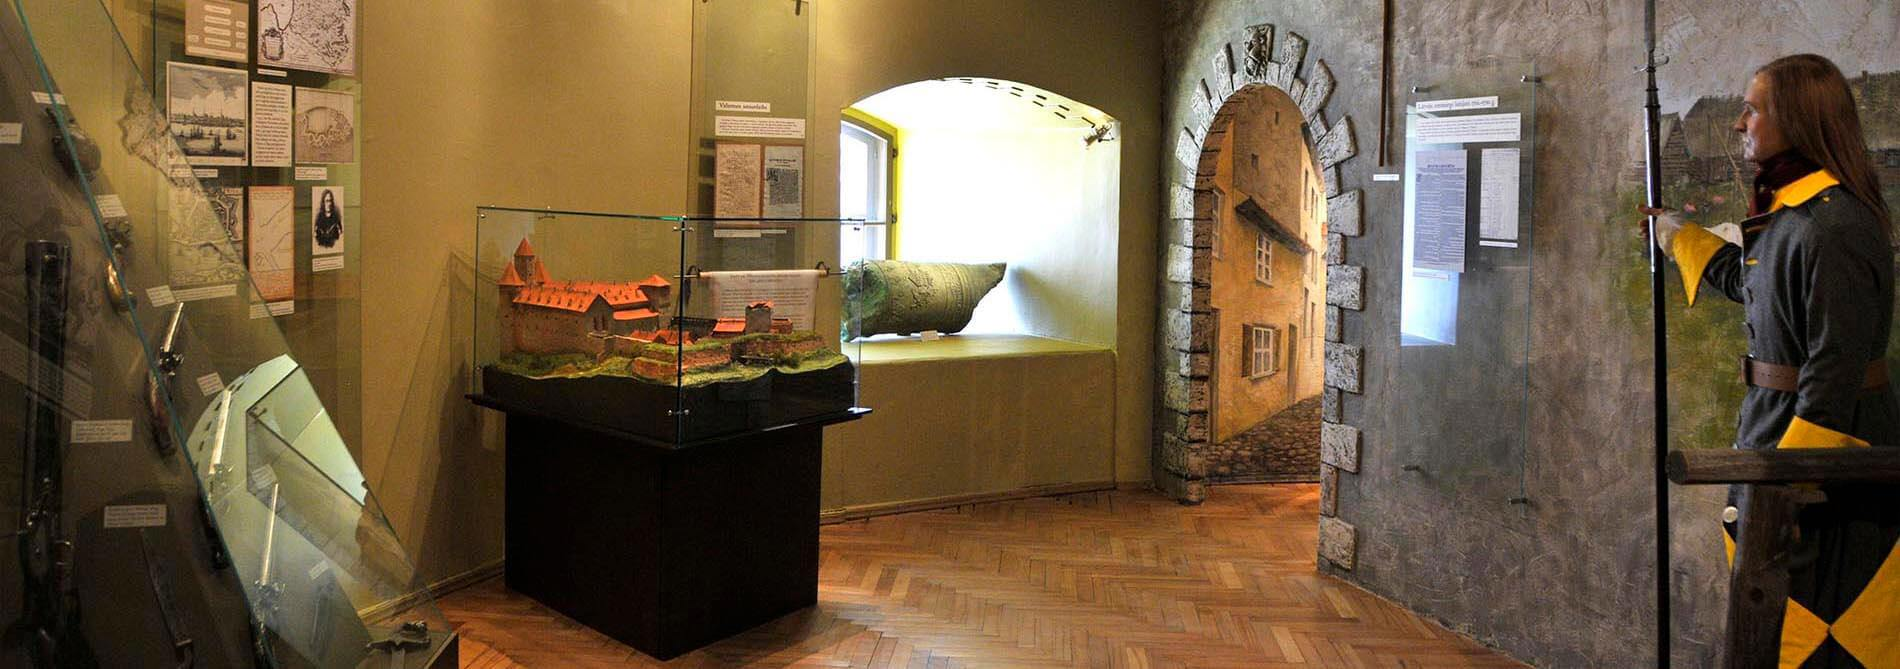 Lotyšské válečné muzeum